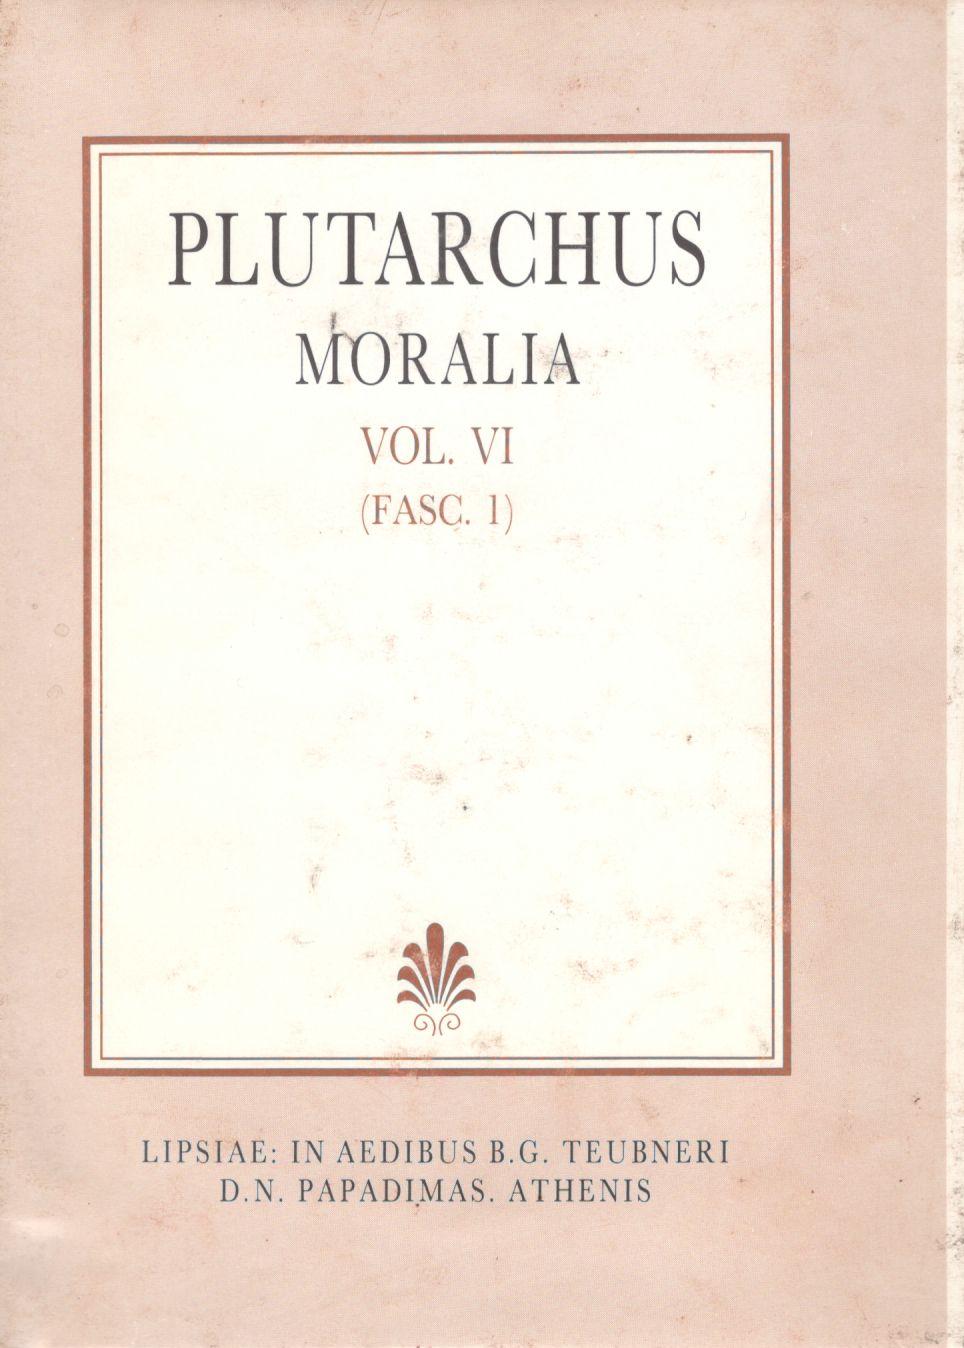 Plutarchi, Moralia, Vol. VI, (Fasc. 1), [Πλουτάρχου, Ηθικά, τ. ΣΤ', (τεύχ. 1)]